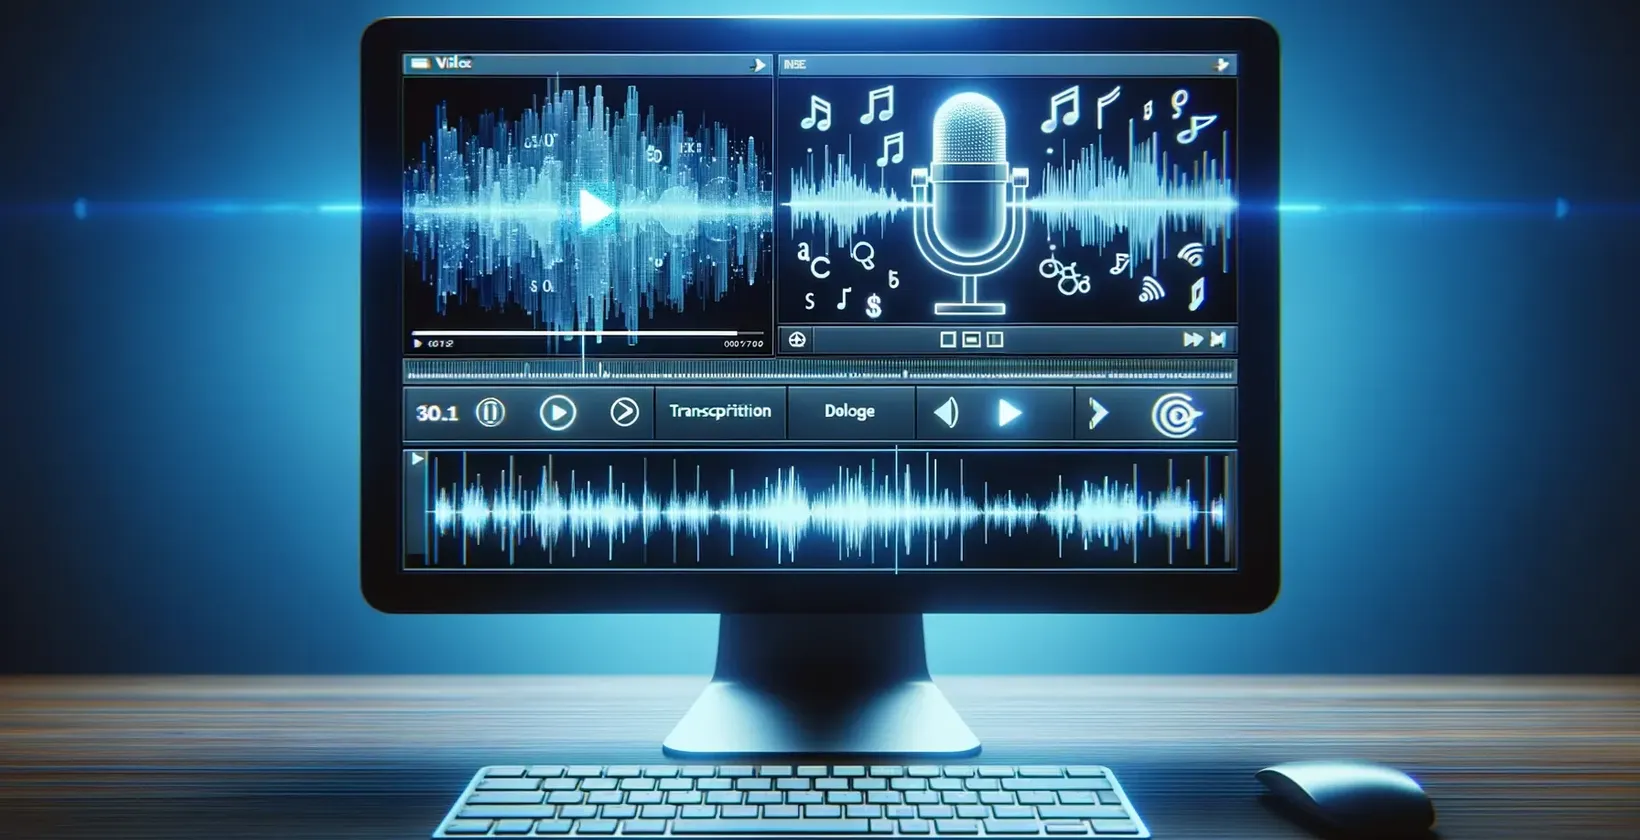 מסך מחשב המציג תווים מוזיקליים ומיקרופון, המשמש לתמלול וידאו לטקסט.